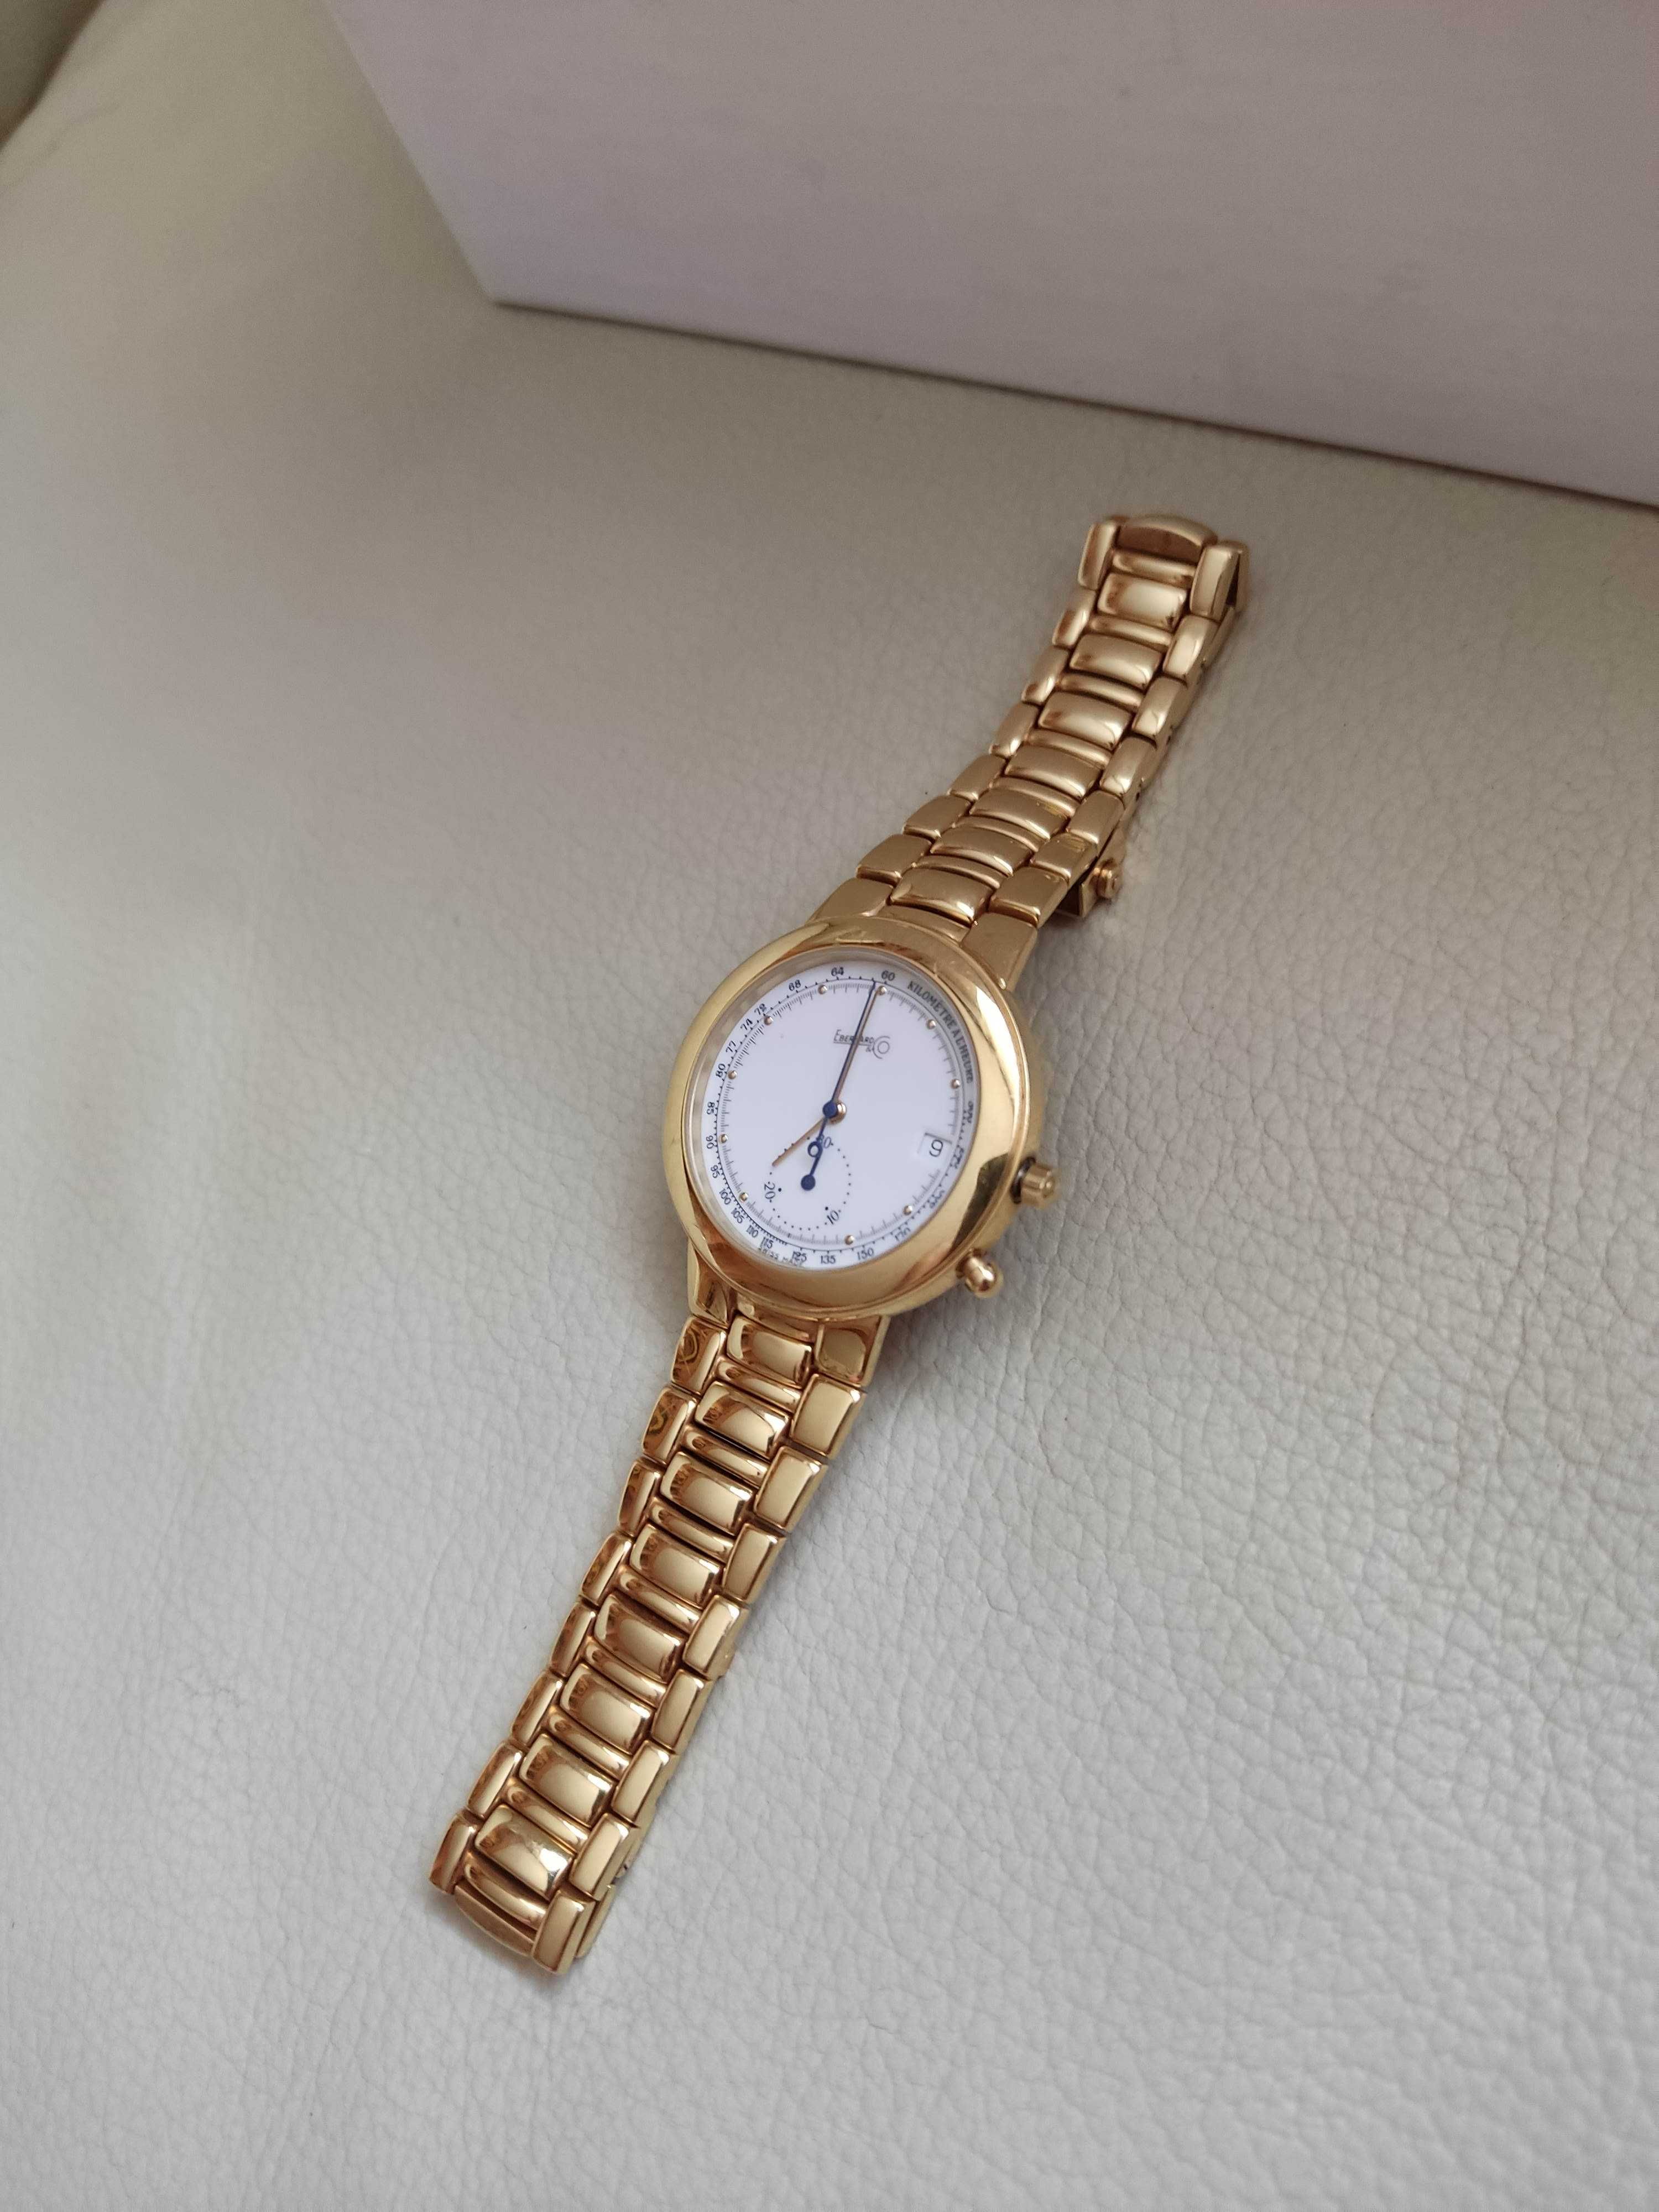 Eberhard złoto 18K gold 750 złoty zegarek